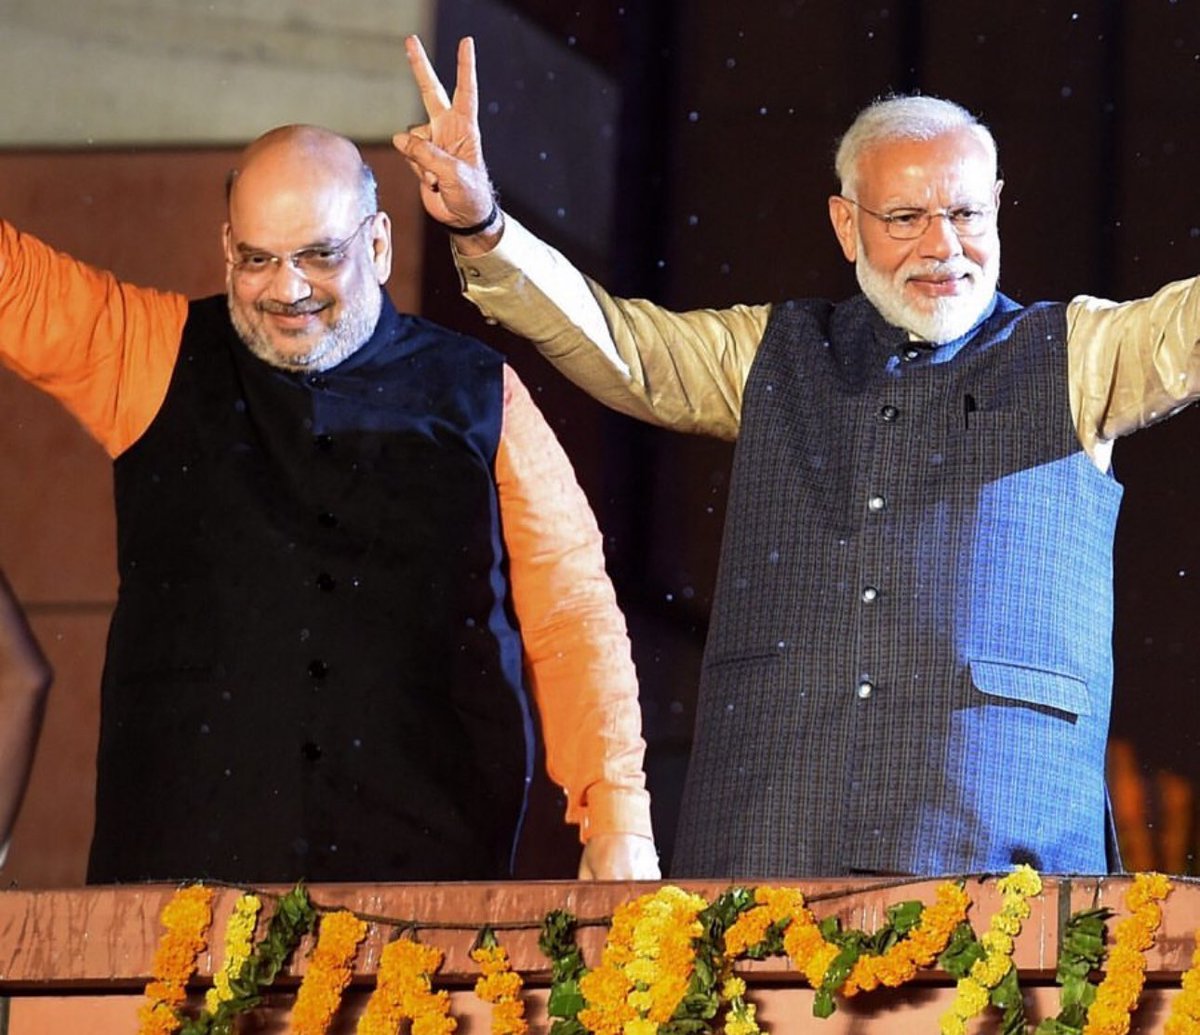 दो चरण का मतदान खत्म हो चुका है !

आपको क्या लगता है,

BJP की कितनी सीटें आएंगी ?

कमेंट कर बताएं।